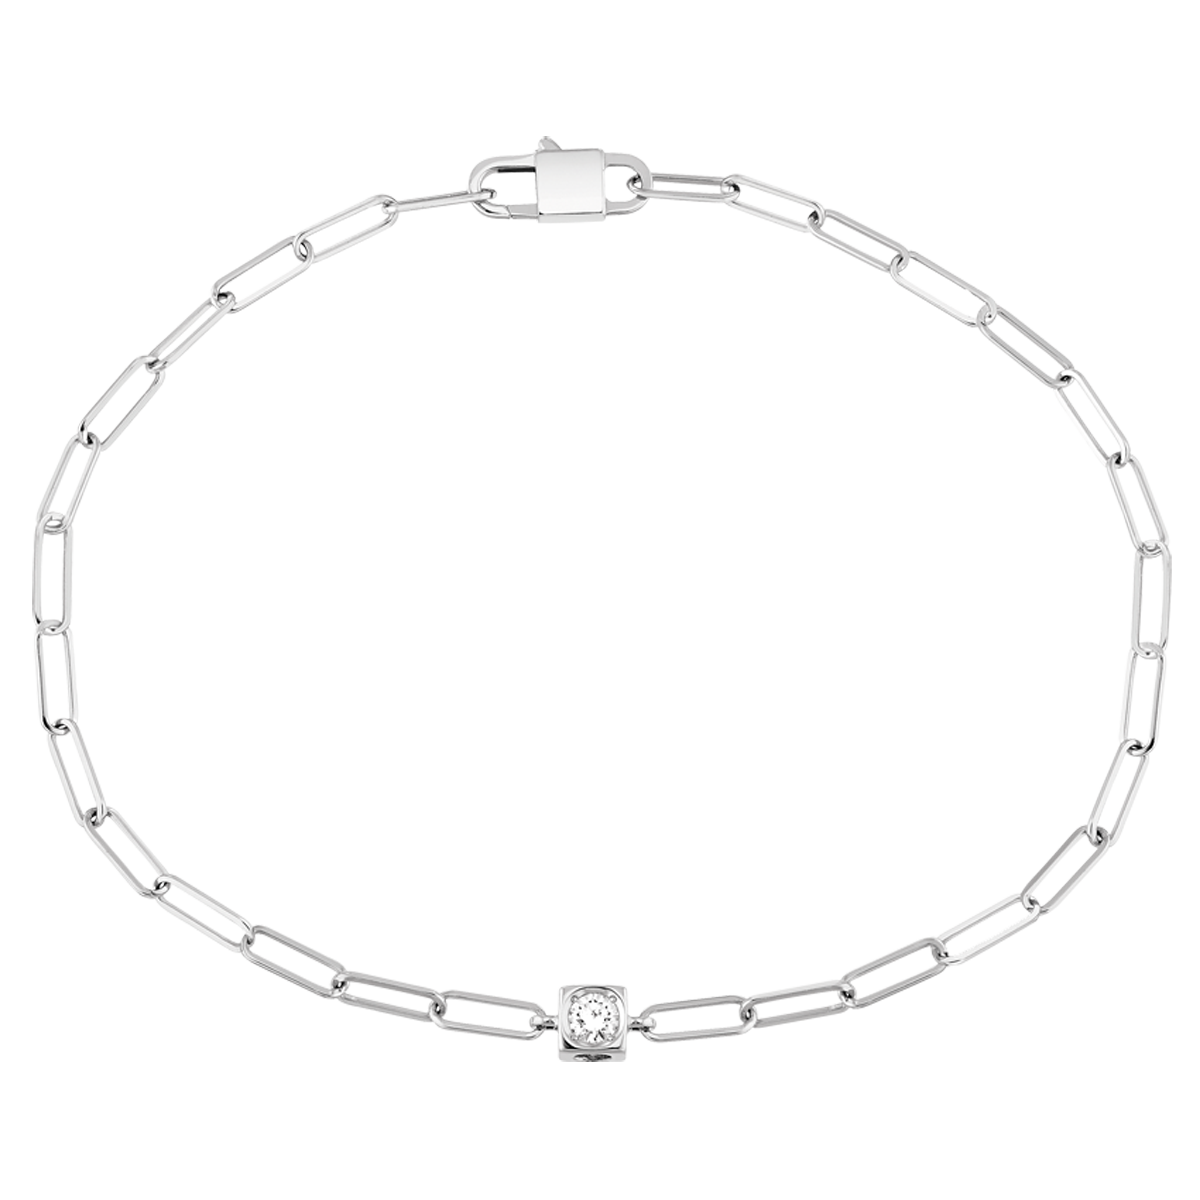 Bracelet Le Cube Diamant or blanc 18Kt et diamant